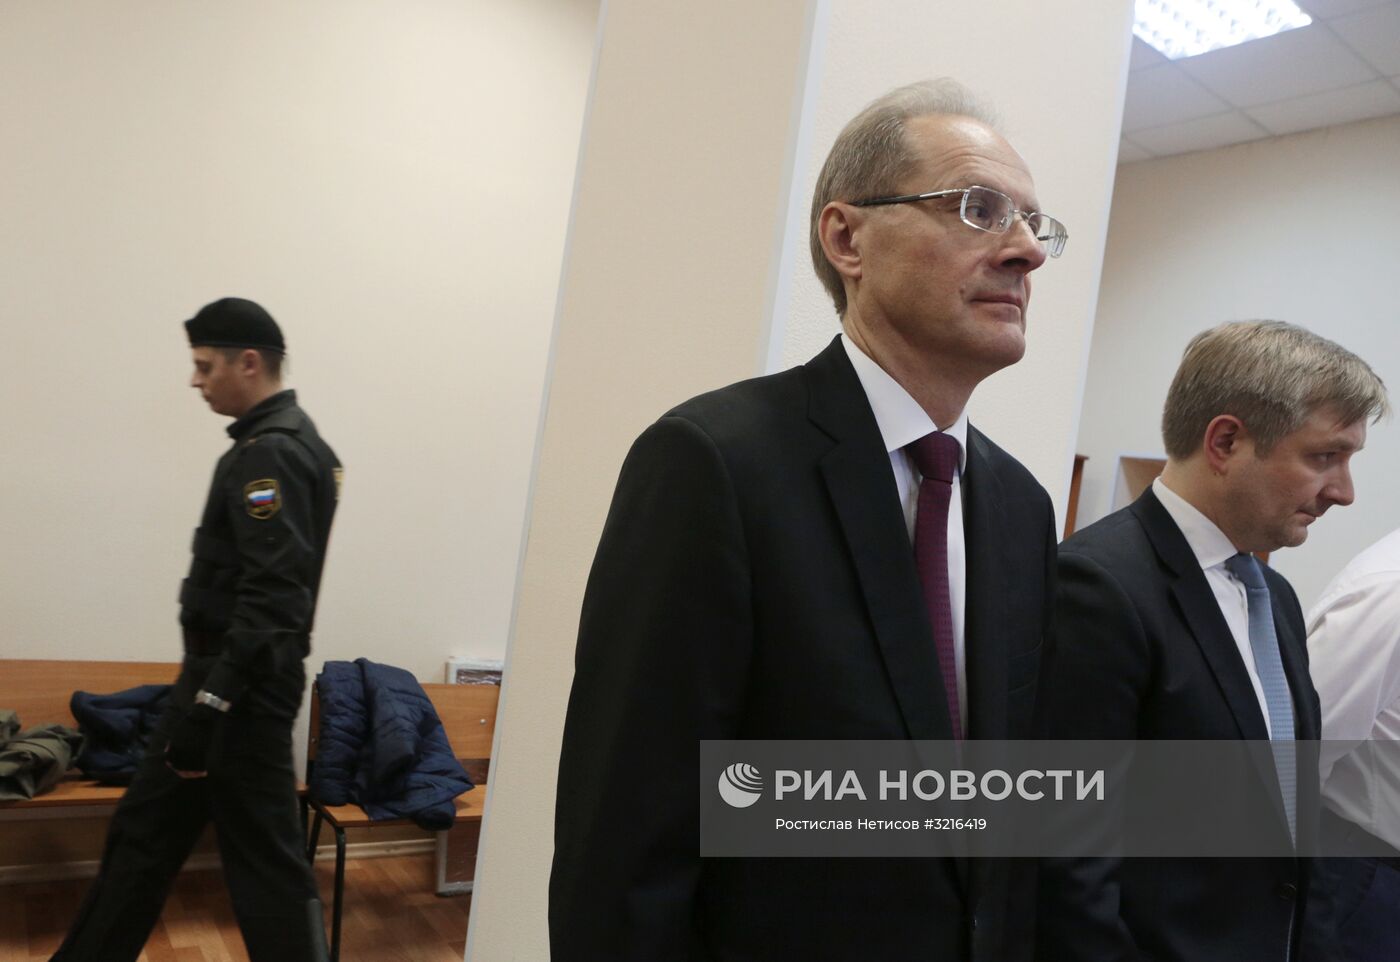 Оглашение приговора по делу экс-губернатора Василия Юрченко в Новосибирске